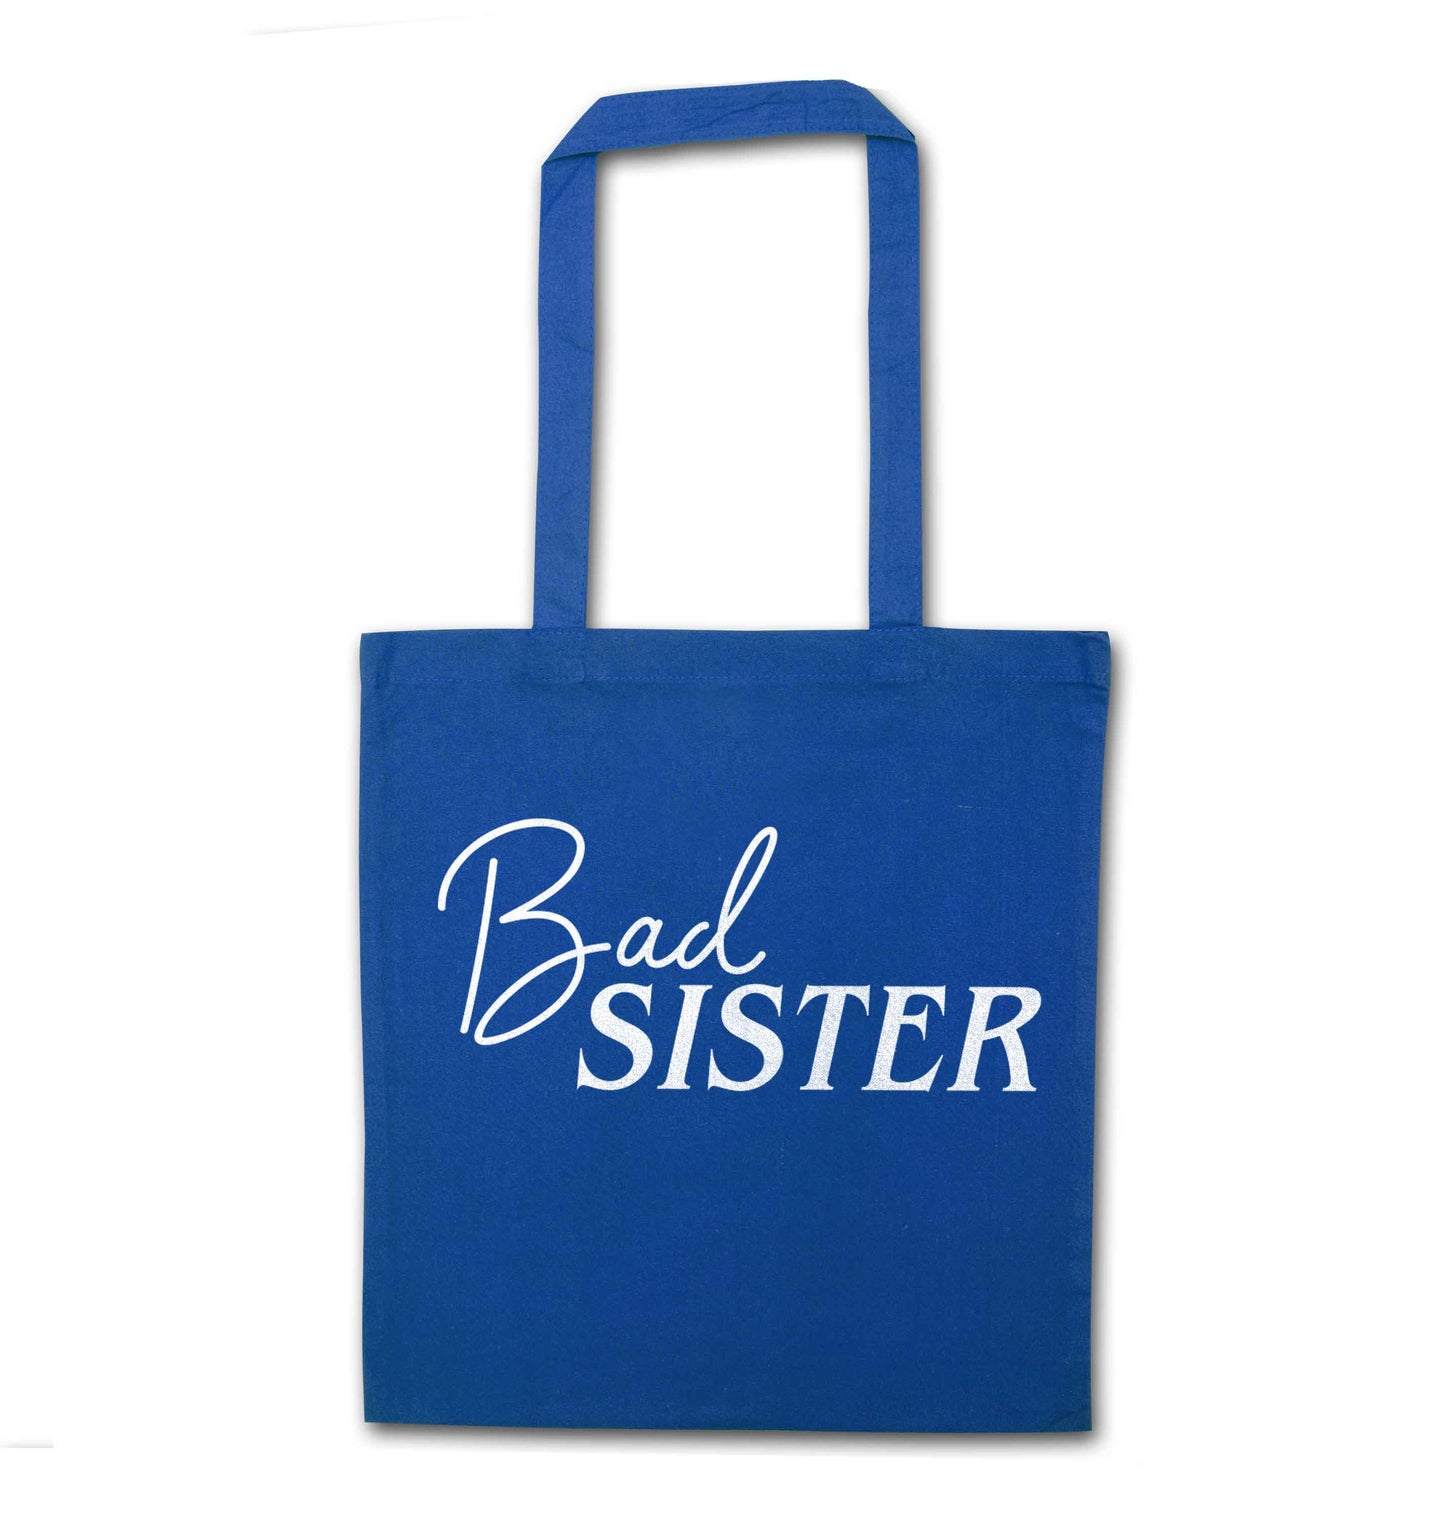 Bad sister blue tote bag